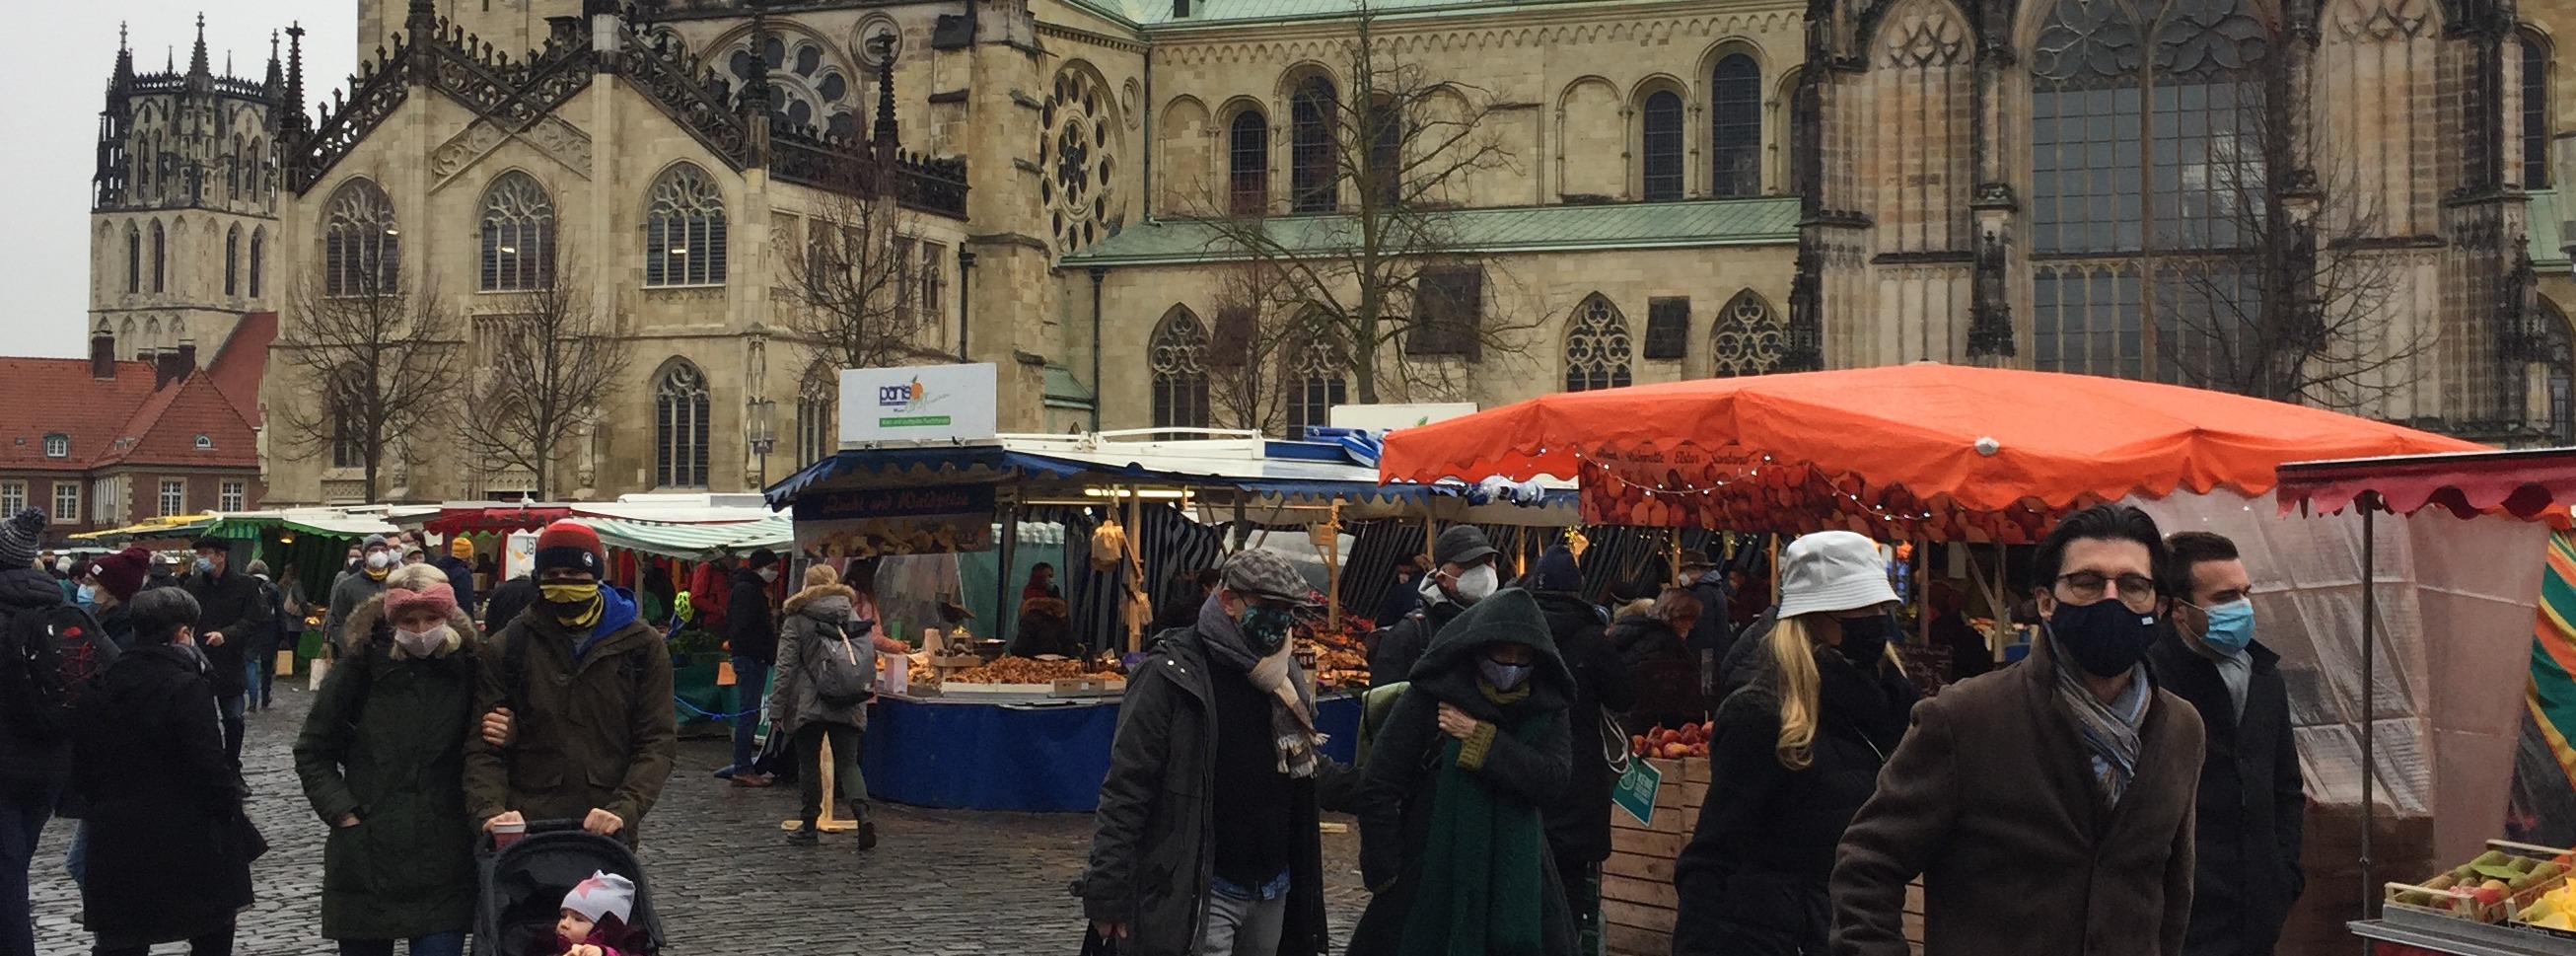 Markt in Muenster